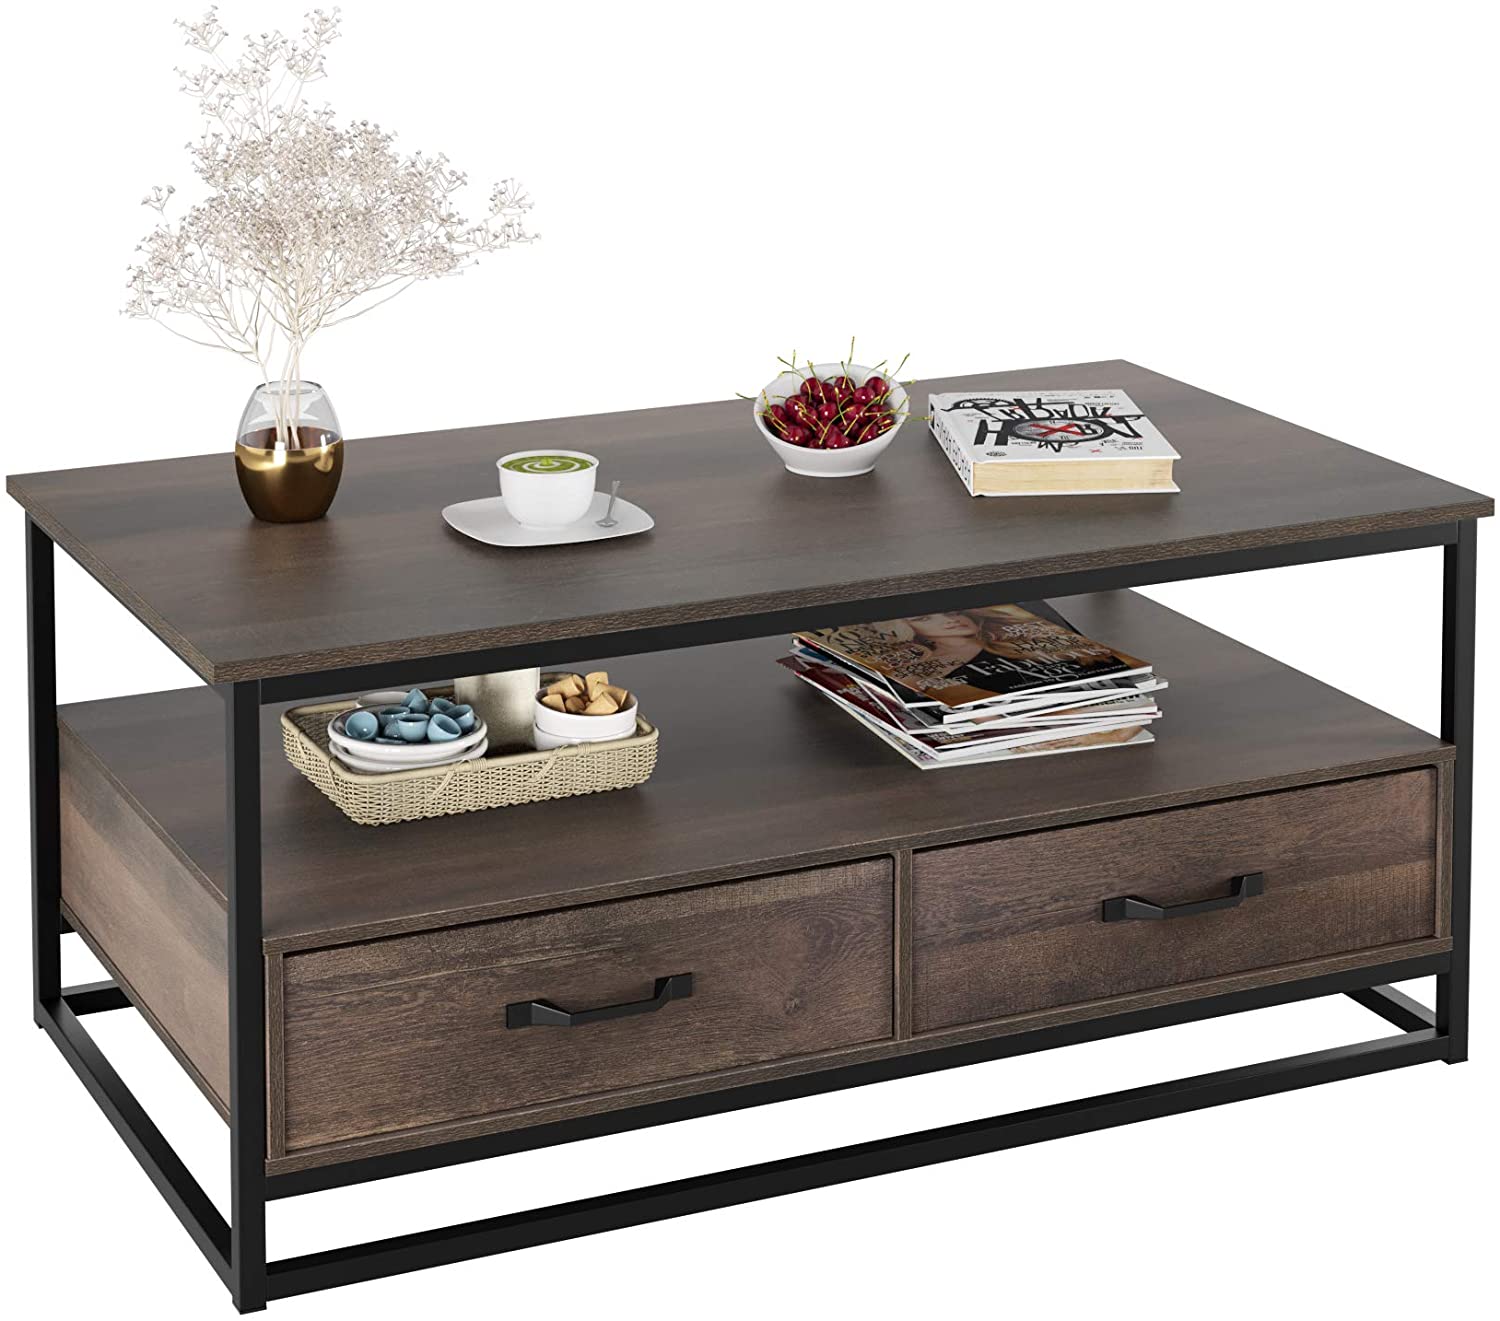 HOMECHO Industrial Wood & Metal Coffee Table, 43-Inch